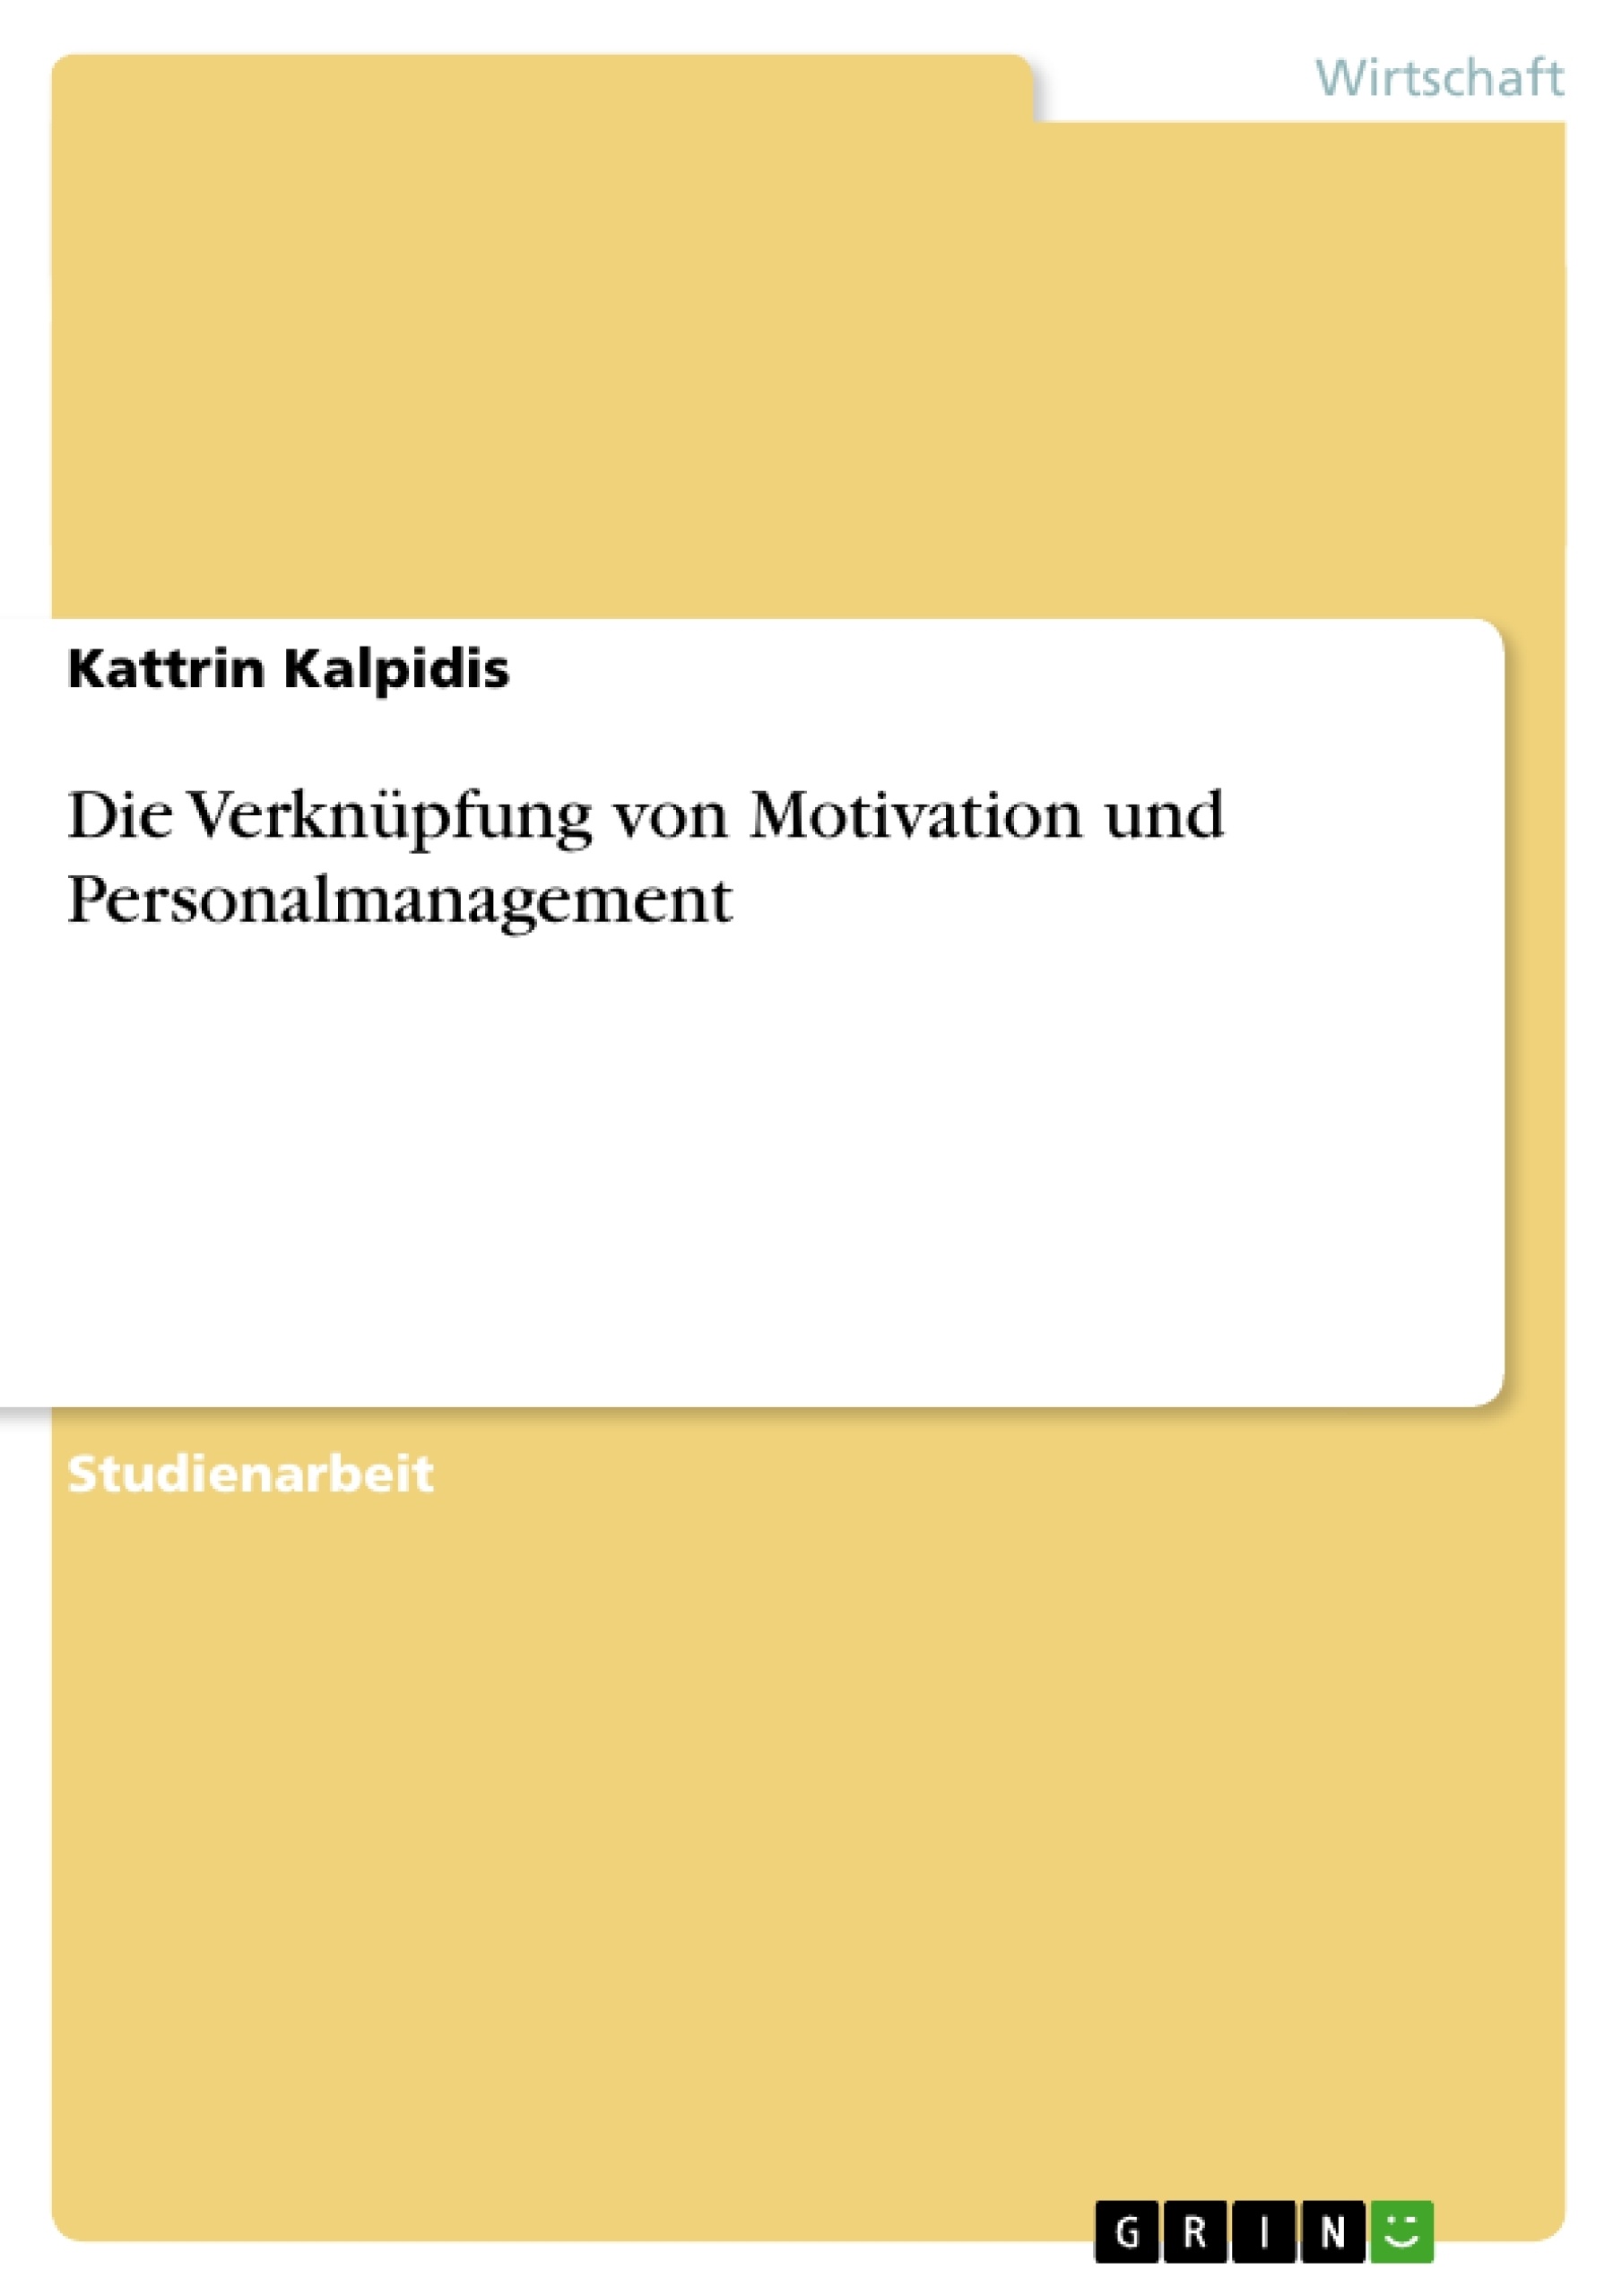 Title: Die Verknüpfung von Motivation und Personalmanagement